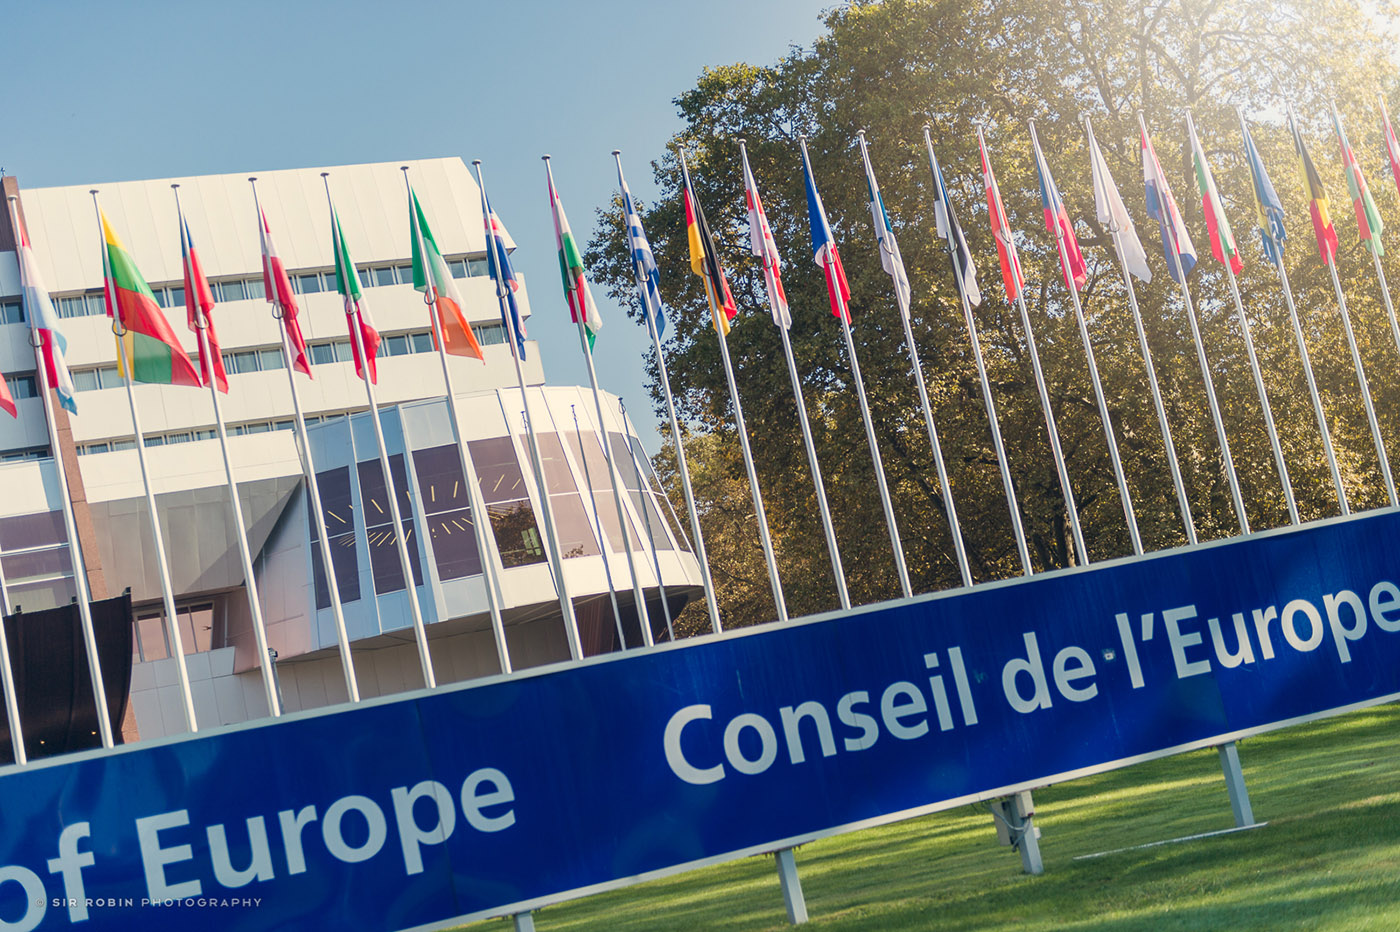 Këshilli i Evropës  konfirmon aplikimin e Kosovës për anëtarësim